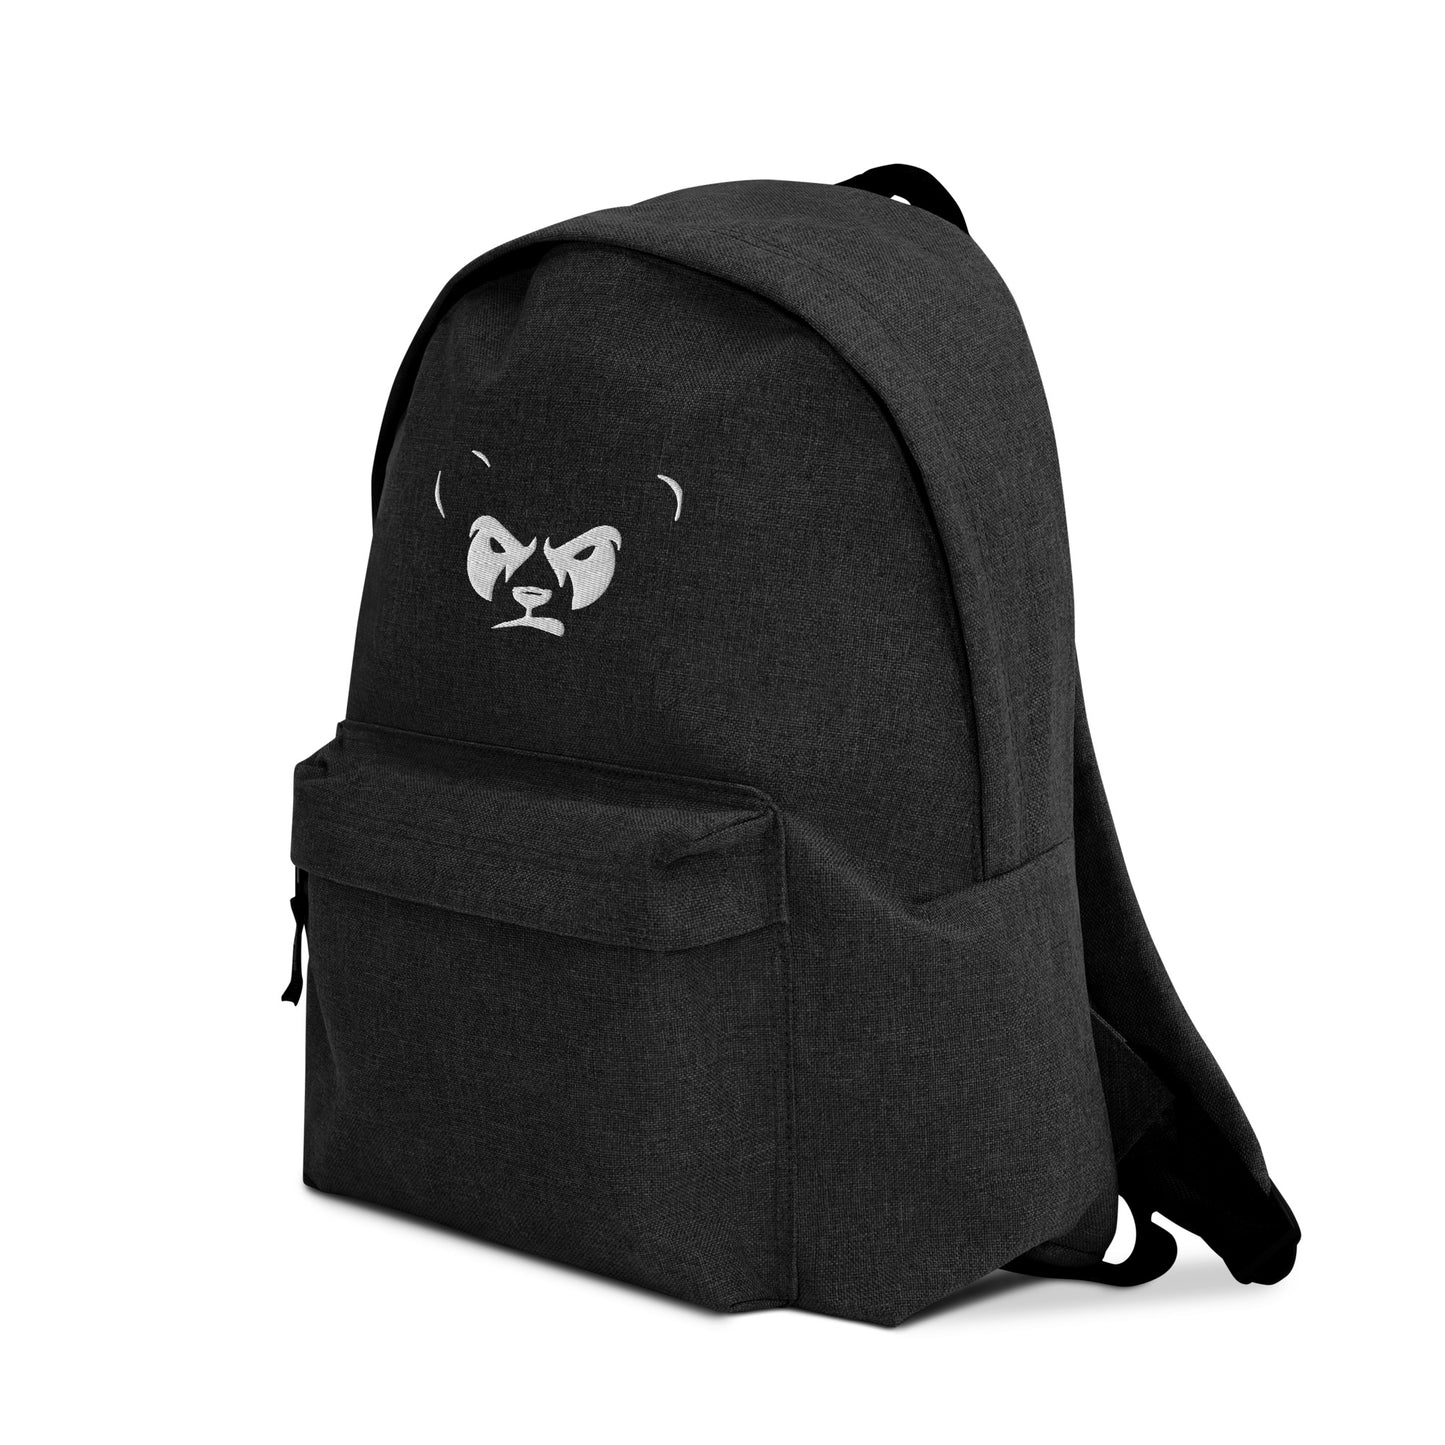 GrumpyPandaz Embroidered Backpack